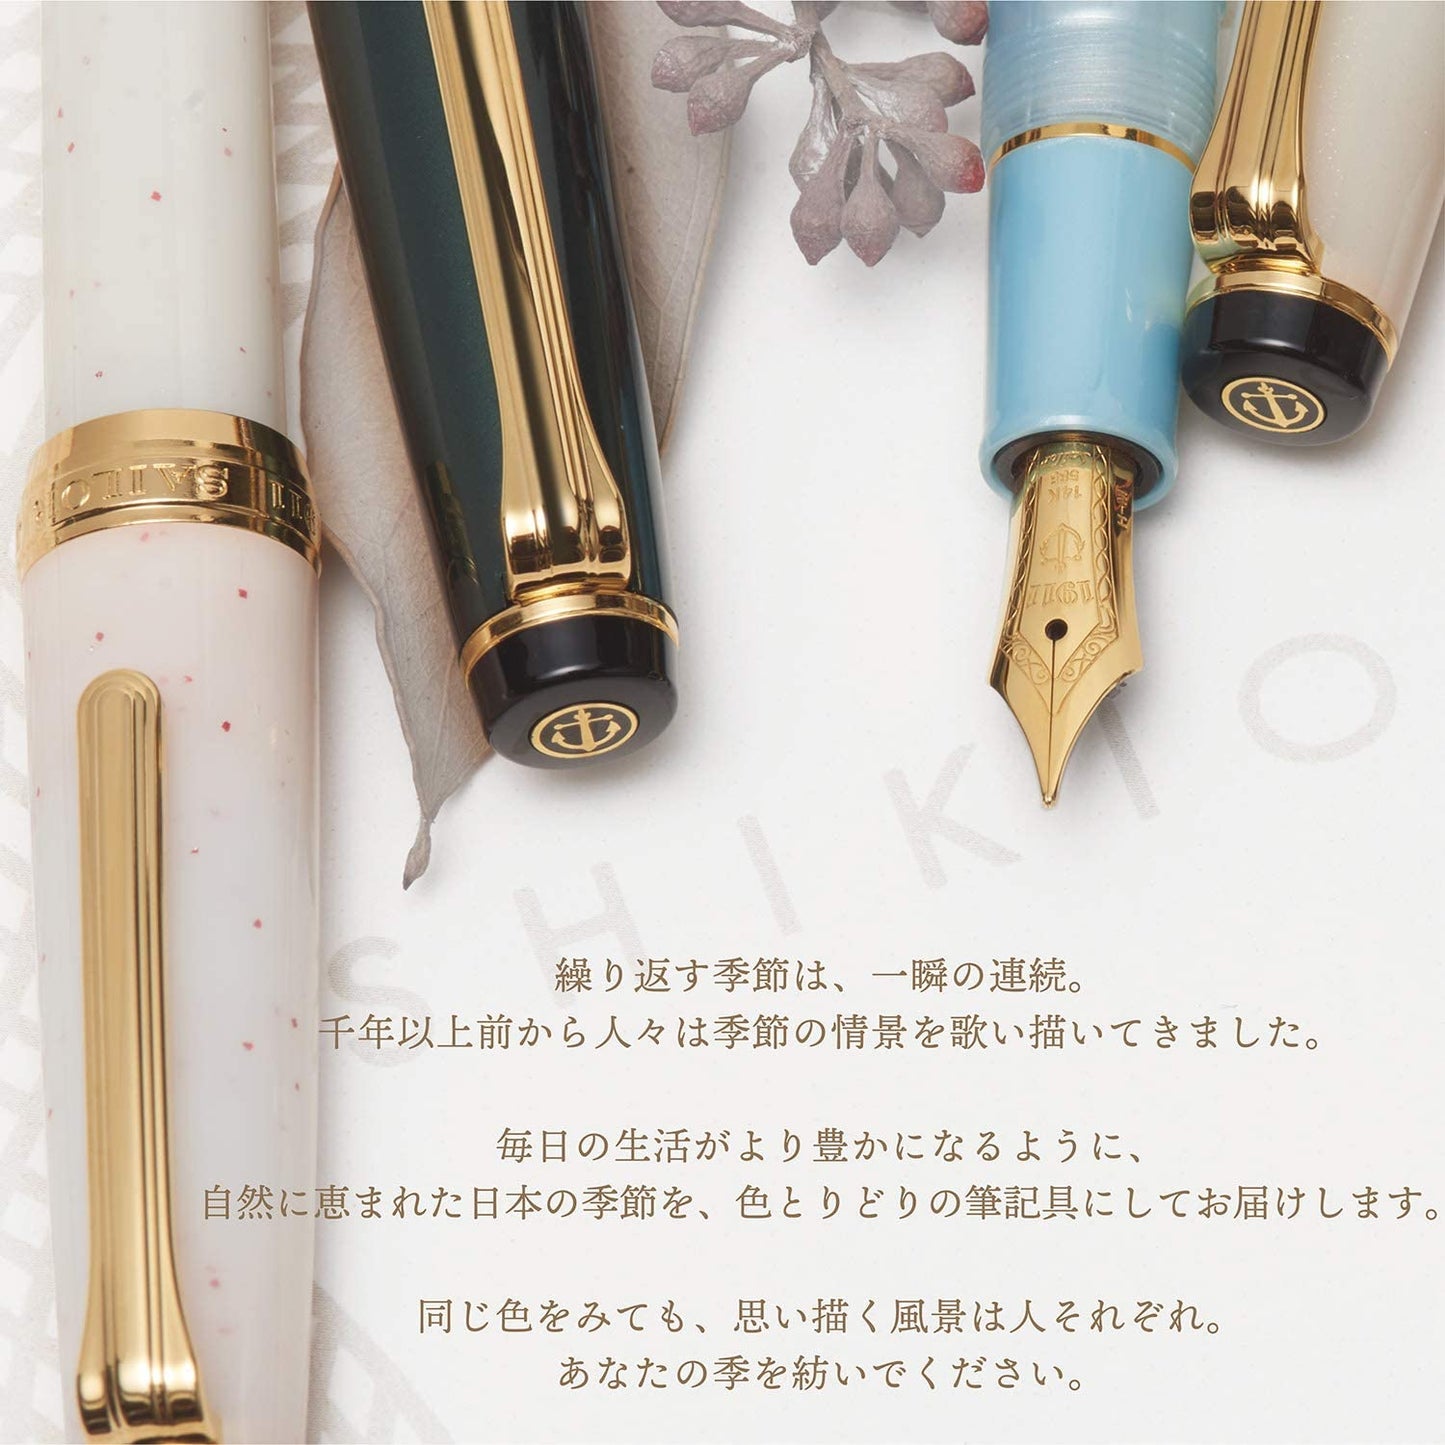 SAILOR, Meigetsu (名月), Shikiori (四季織) Setsugetsu Soraha (雪月空葉) Fountain Pen，EF / MF Nib